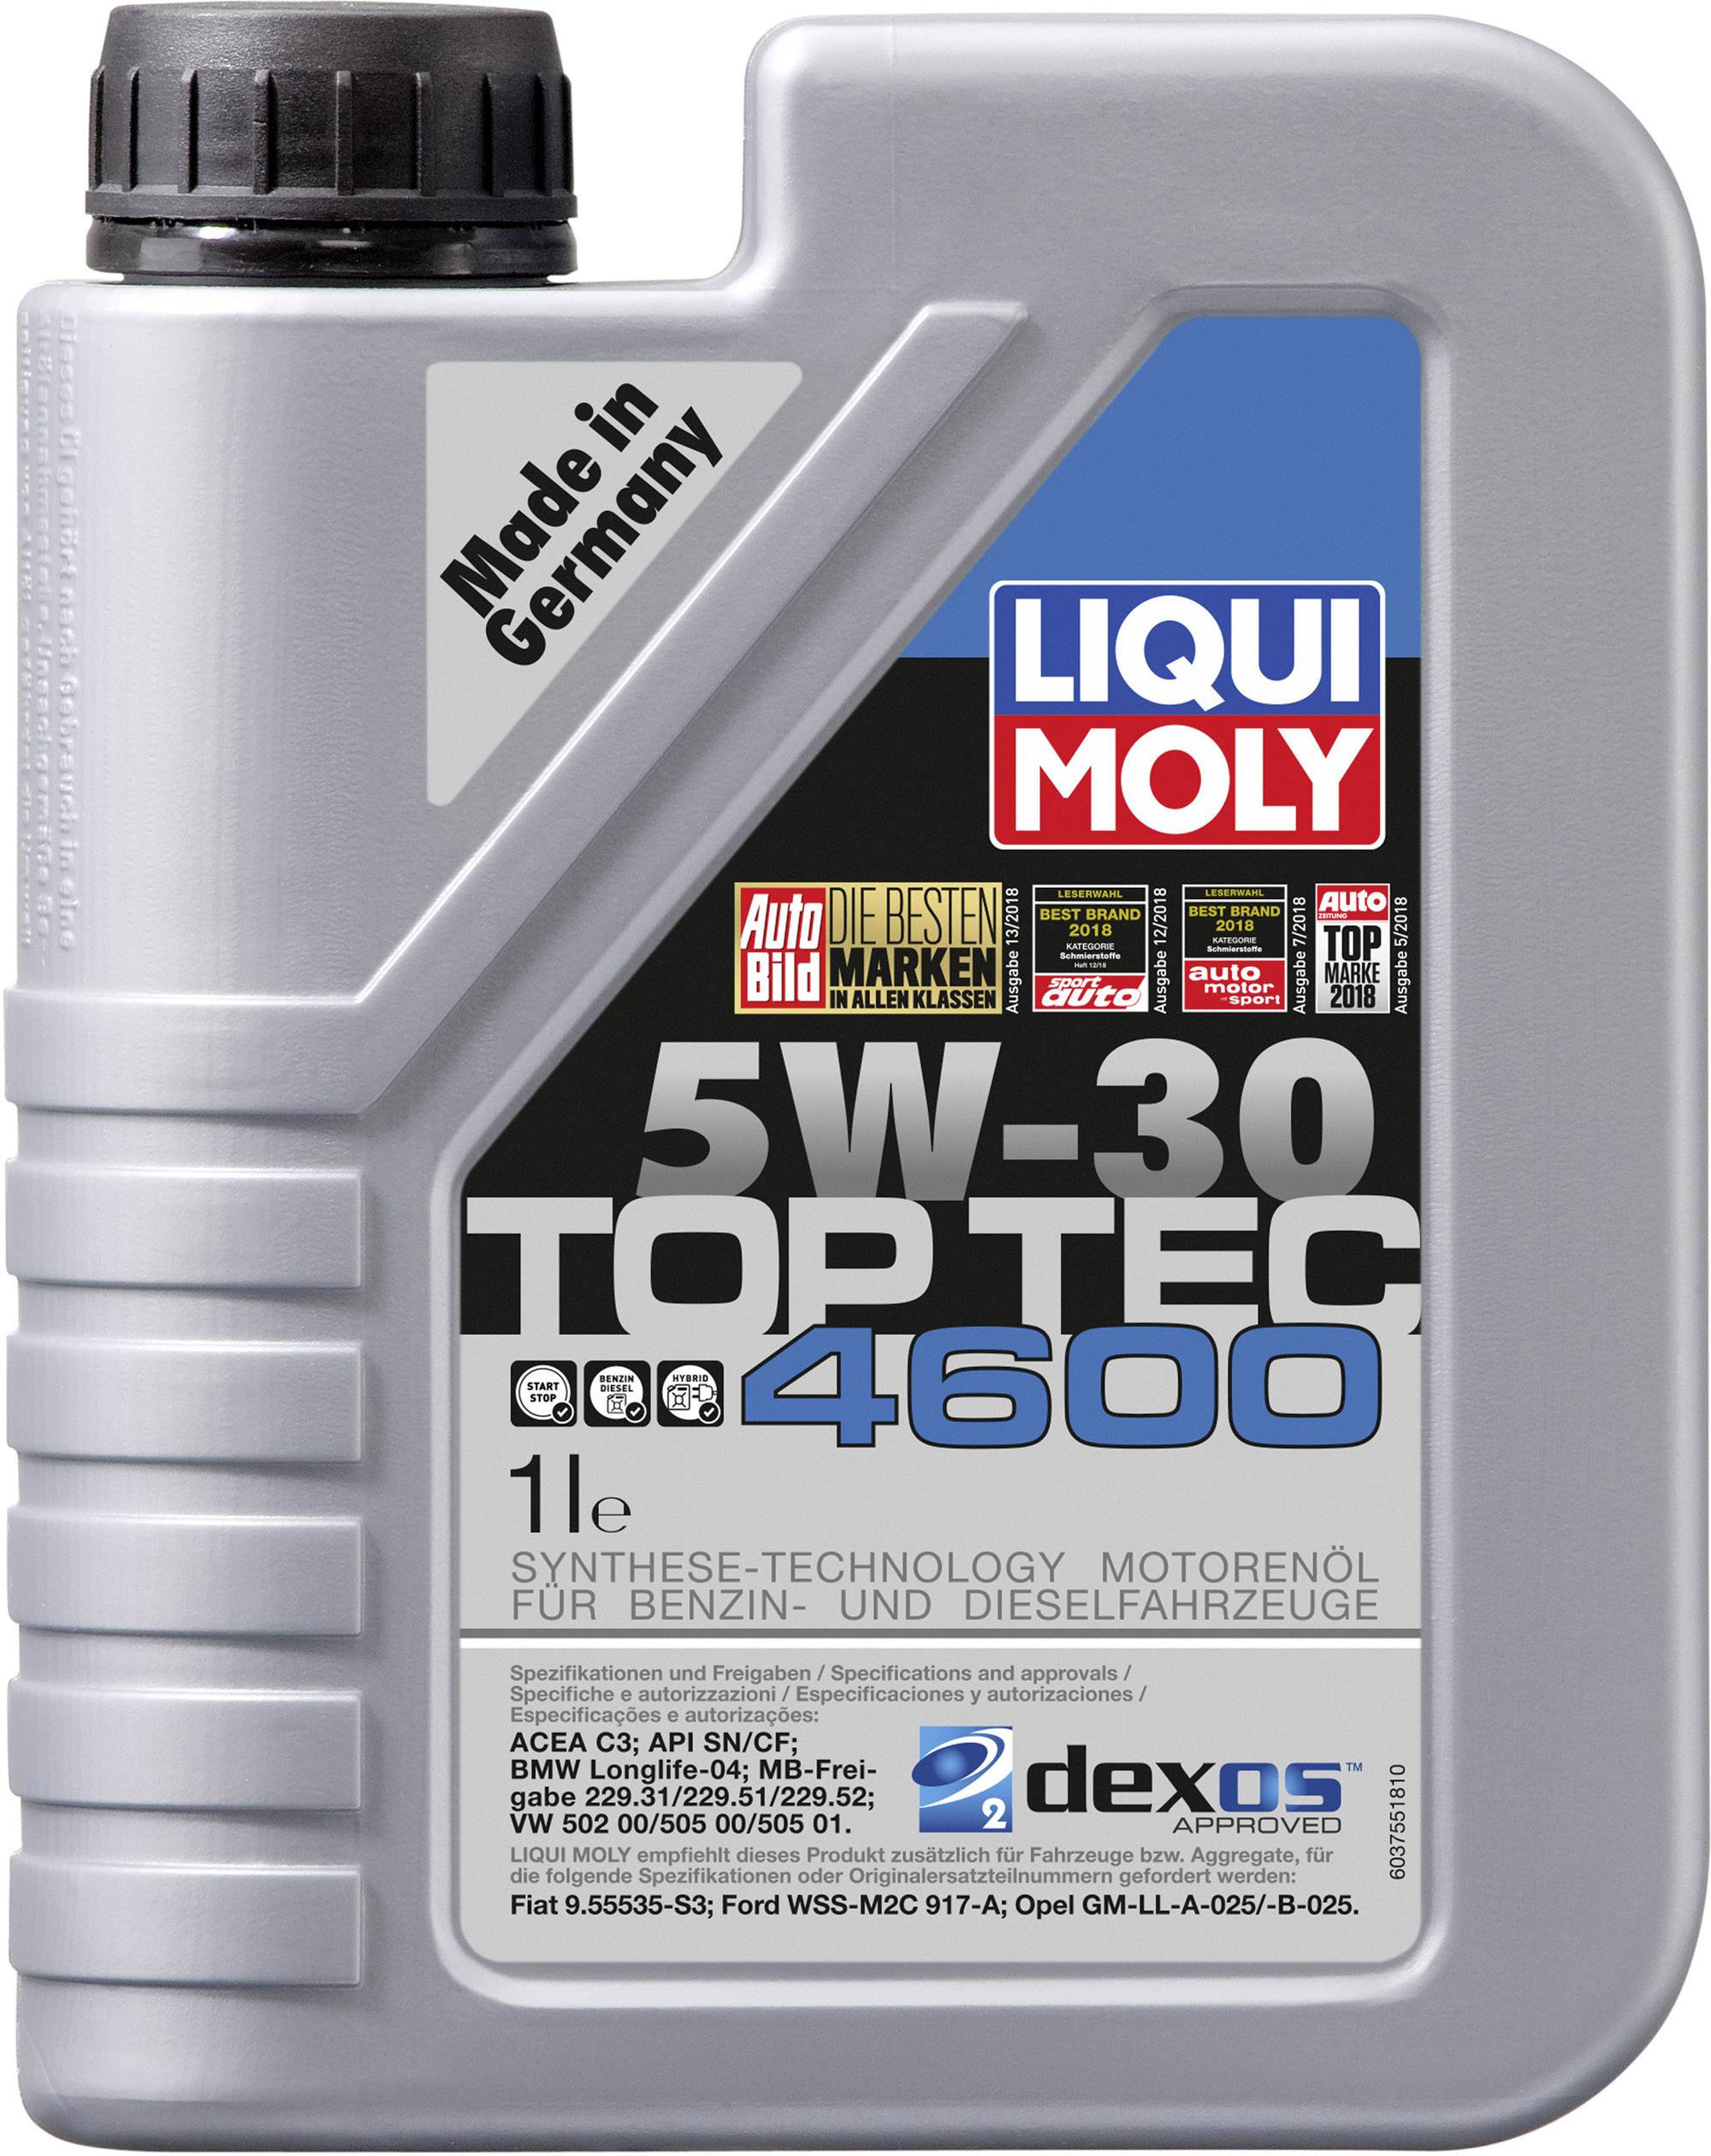 Buy Liqui Moly Top Tec 4600 5W-30 3755 Engine oil 1 l